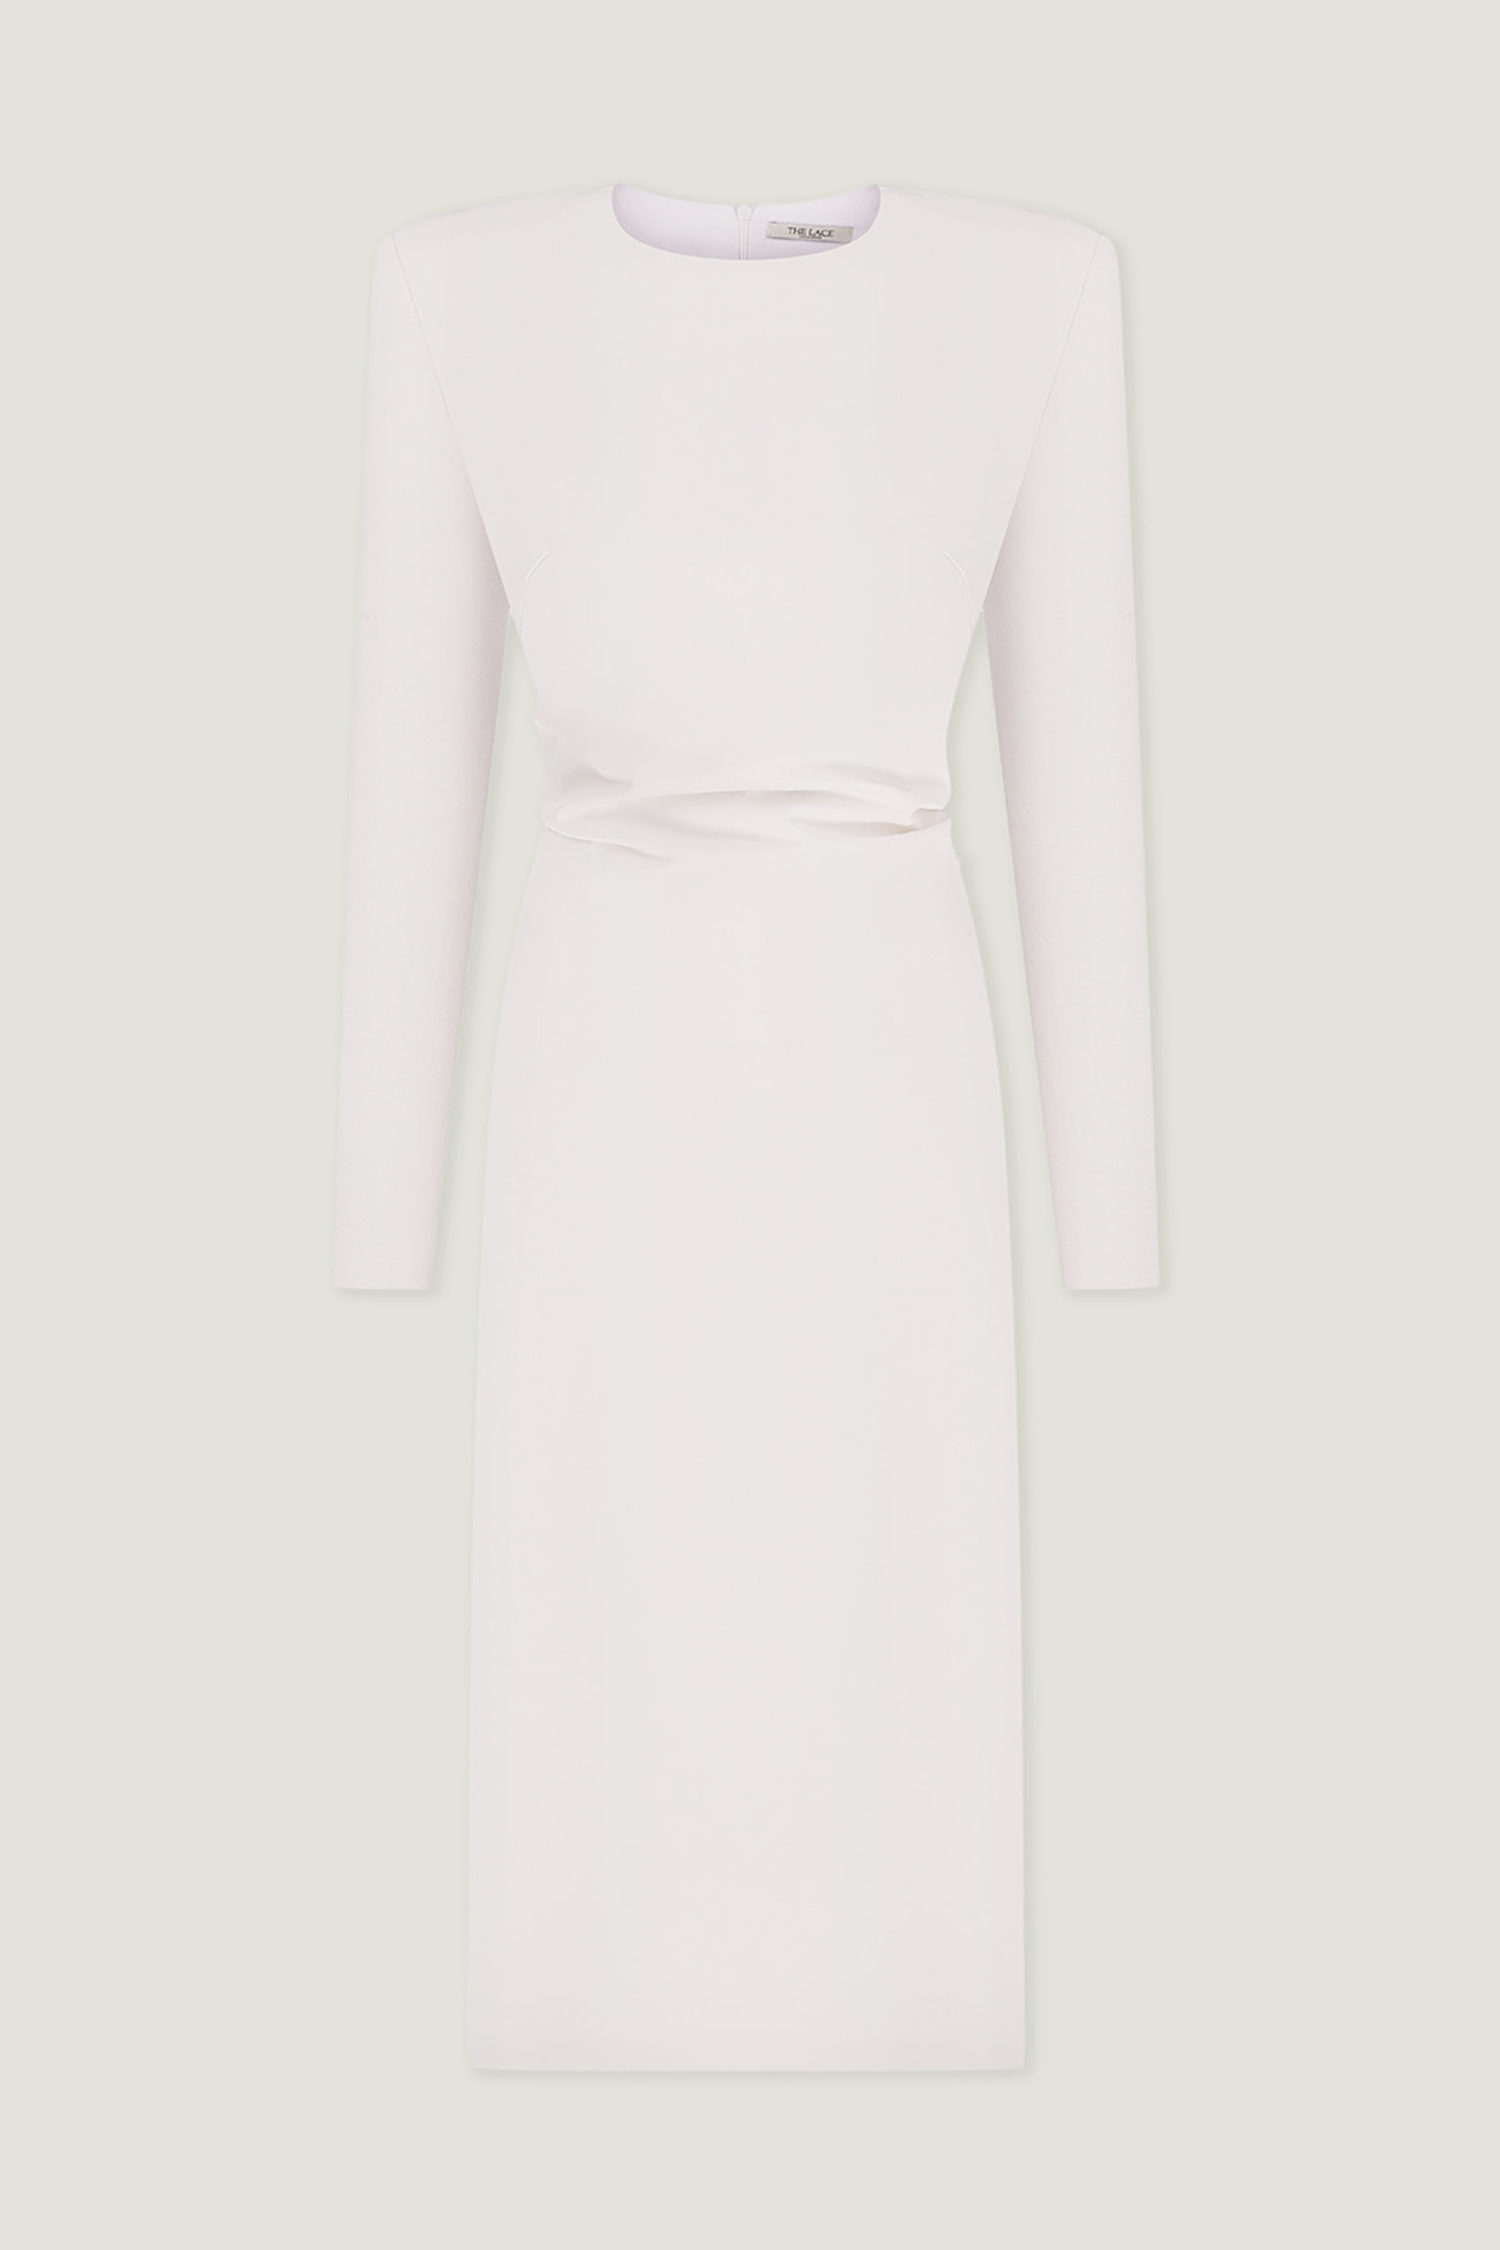 Сукня міді з драпіруванням біла - THE LACE фото 259854